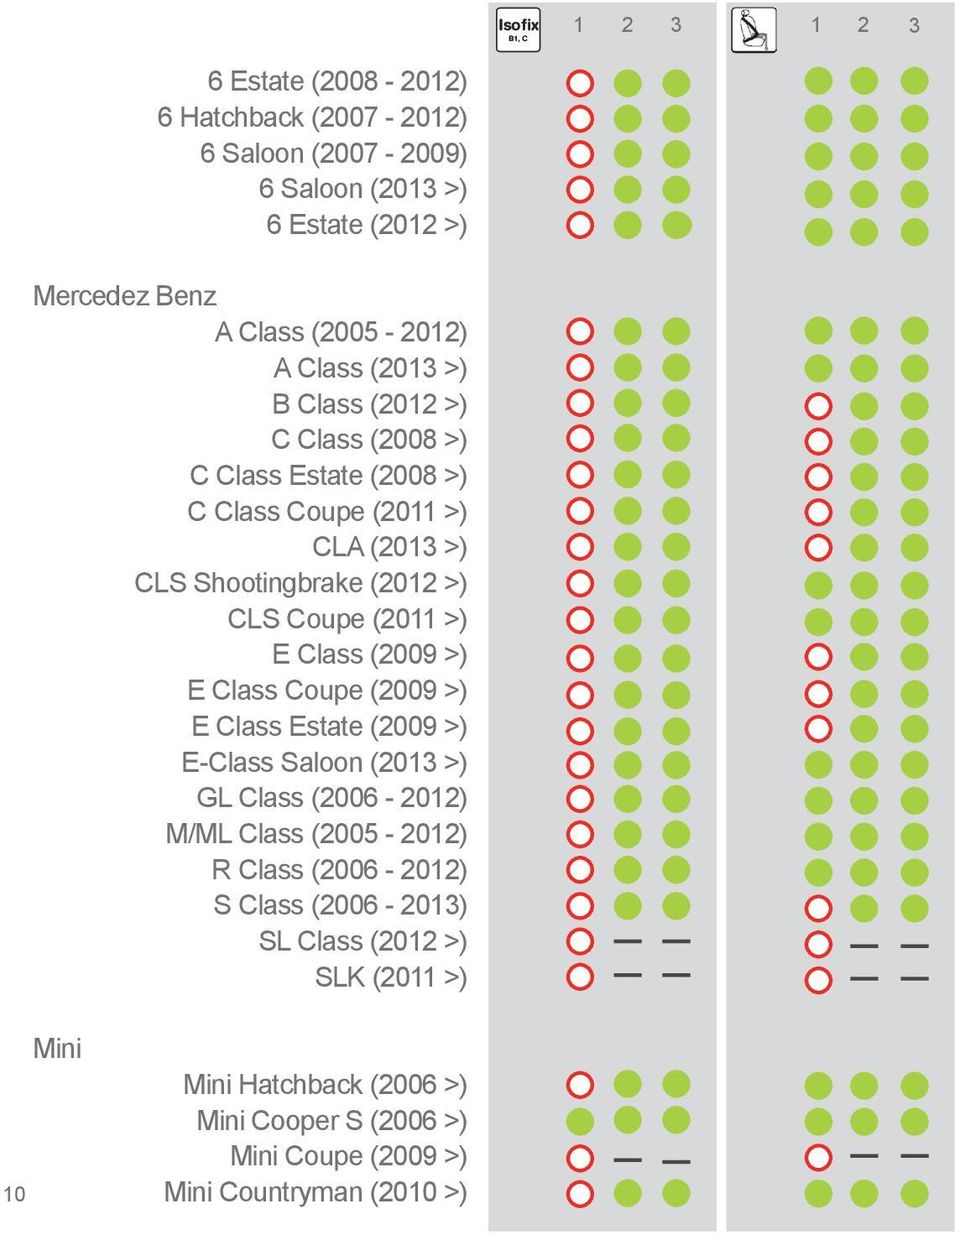 E Class (2009 >) E Class Coupe (2009 >) E Class Estate (2009 >) E-Class Saloon (2013 >) GL Class (2006-2012) M/ML Class (2005-2012) R Class